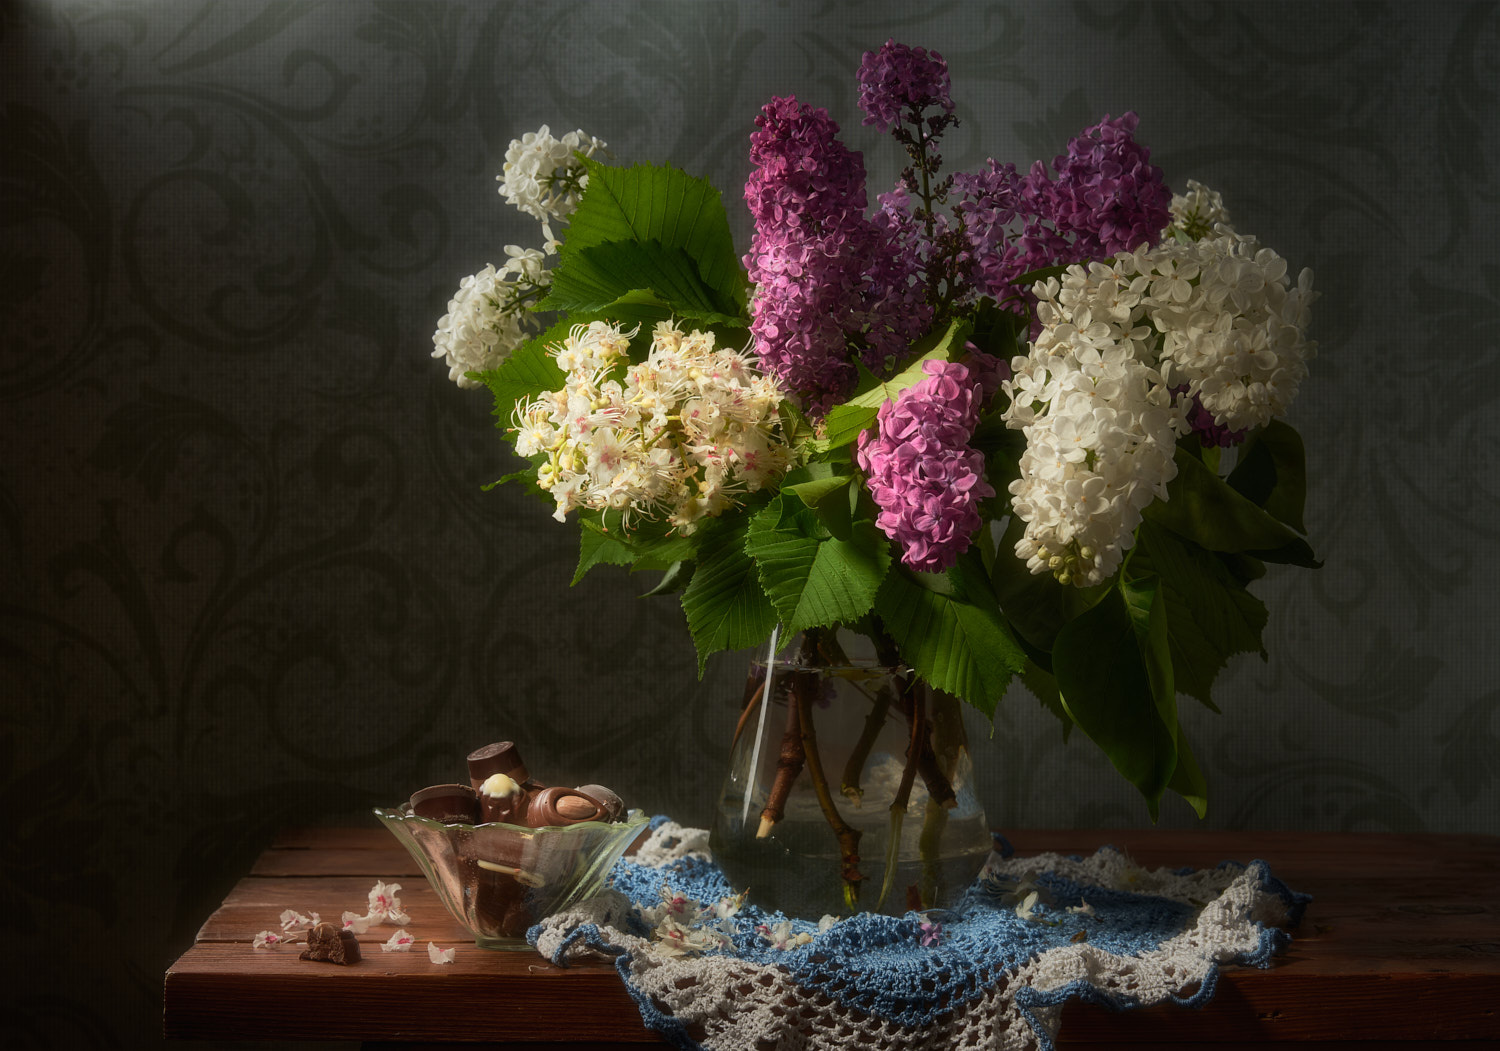 Весенние цветы натюрморт композиция постановка сцена цветы сирень каштан букет конфеты